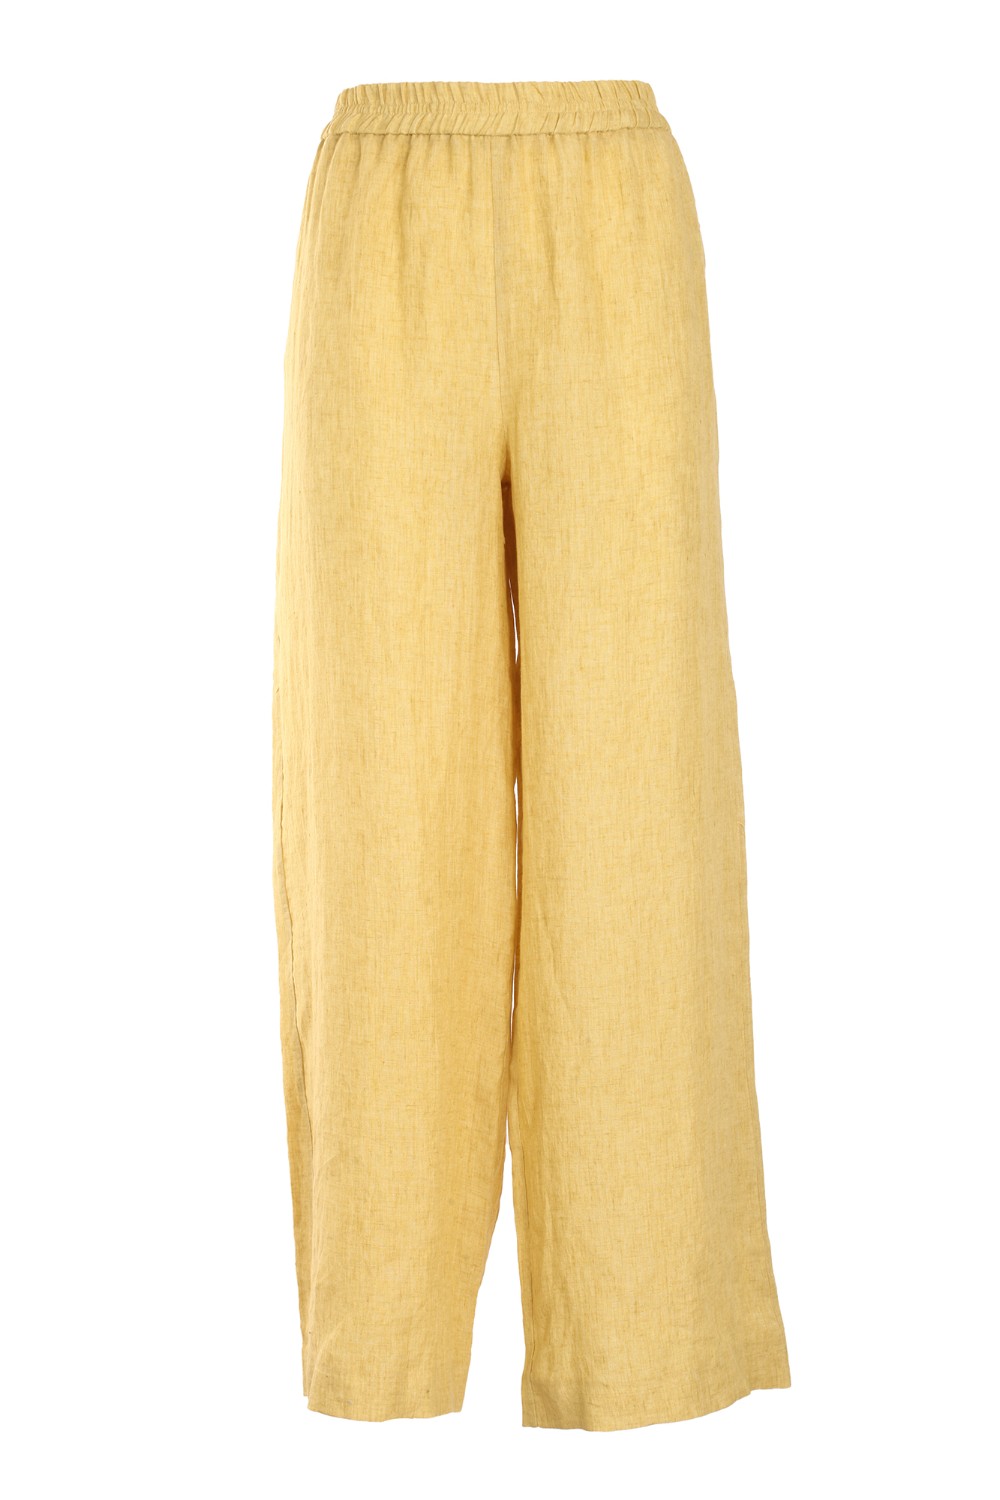 shop FABIANA FILIPPI Saldi Pantalone: Fabiana Filippi pantalone in lino, giallo.
Linea loose fit. 
Vita elasticizzata.
Composizione: 100% Lino.
Fatto in Italia.. PADP02W389-756 number 3719681